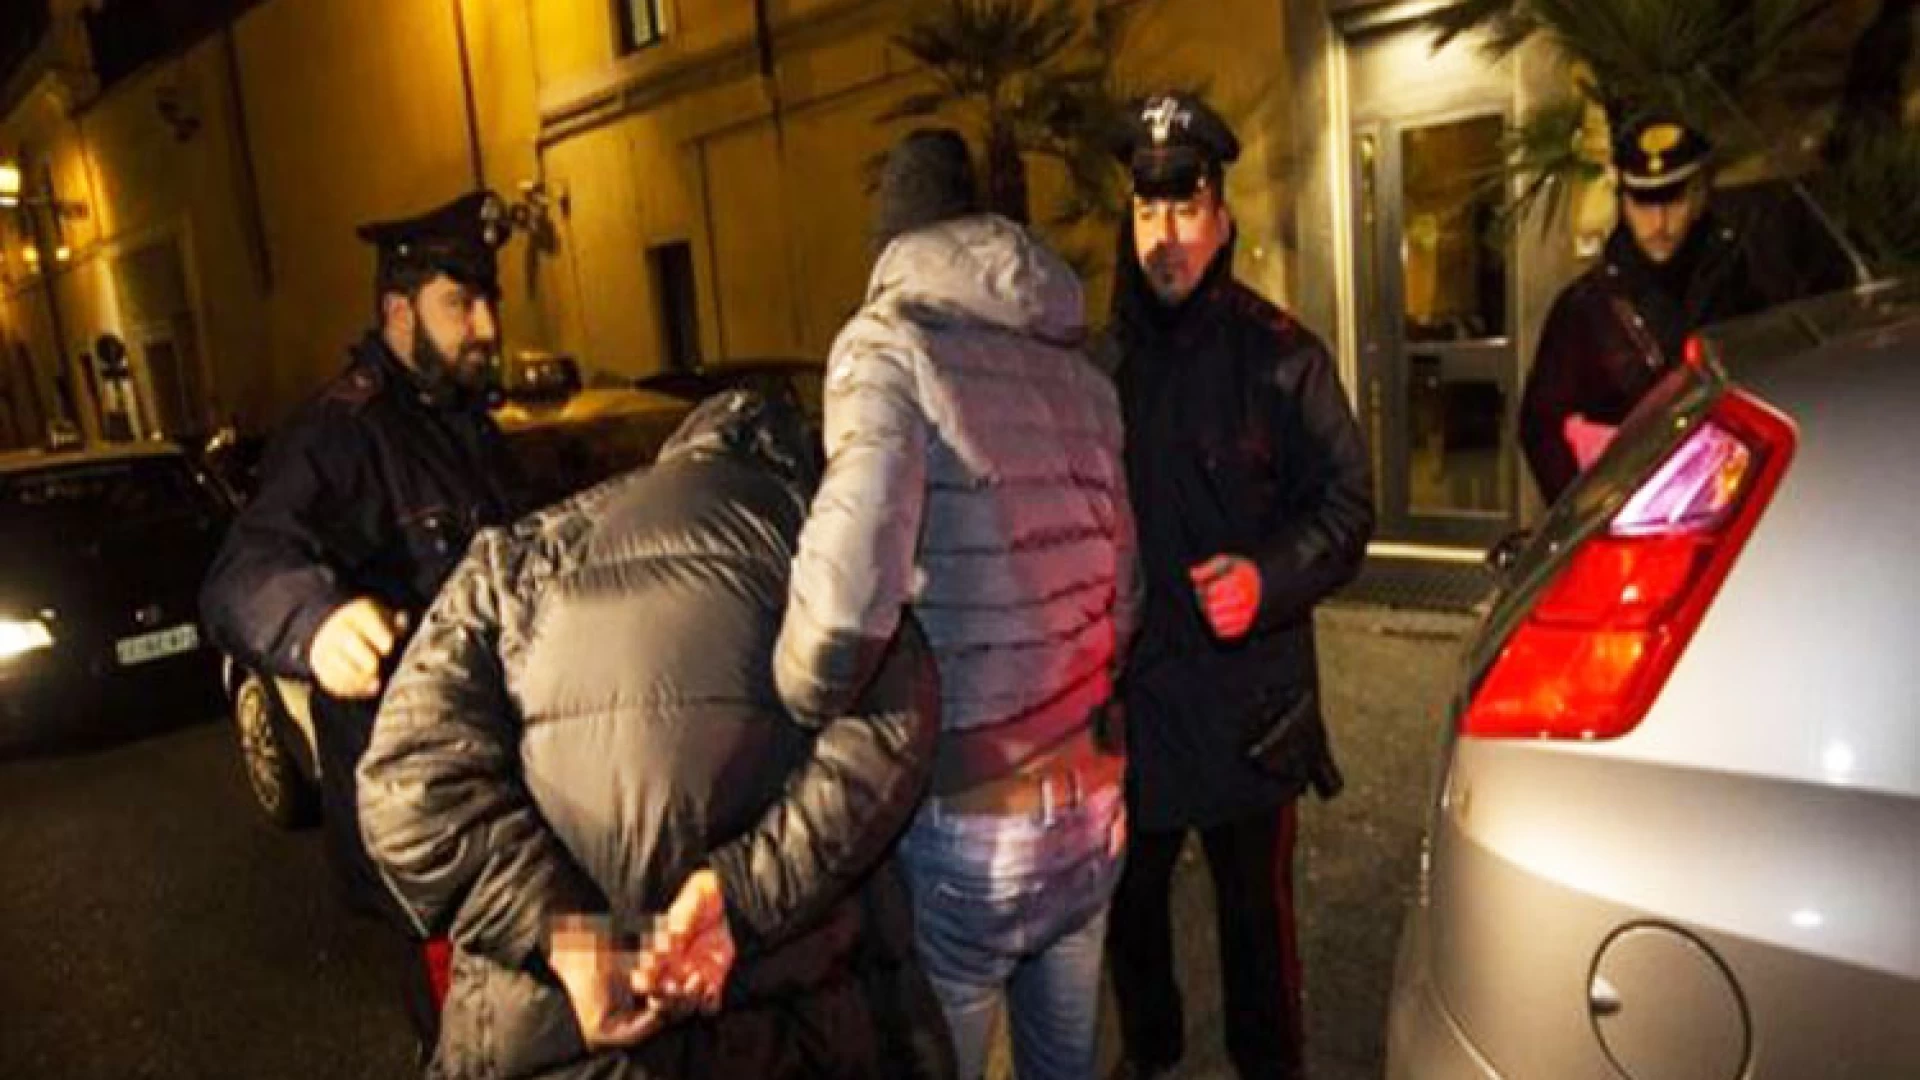 Isernia: Carabinieri in azione contro i reati predatori. A Venafro recuperata un’auto rubata. Controlli tra Molise e Campania.